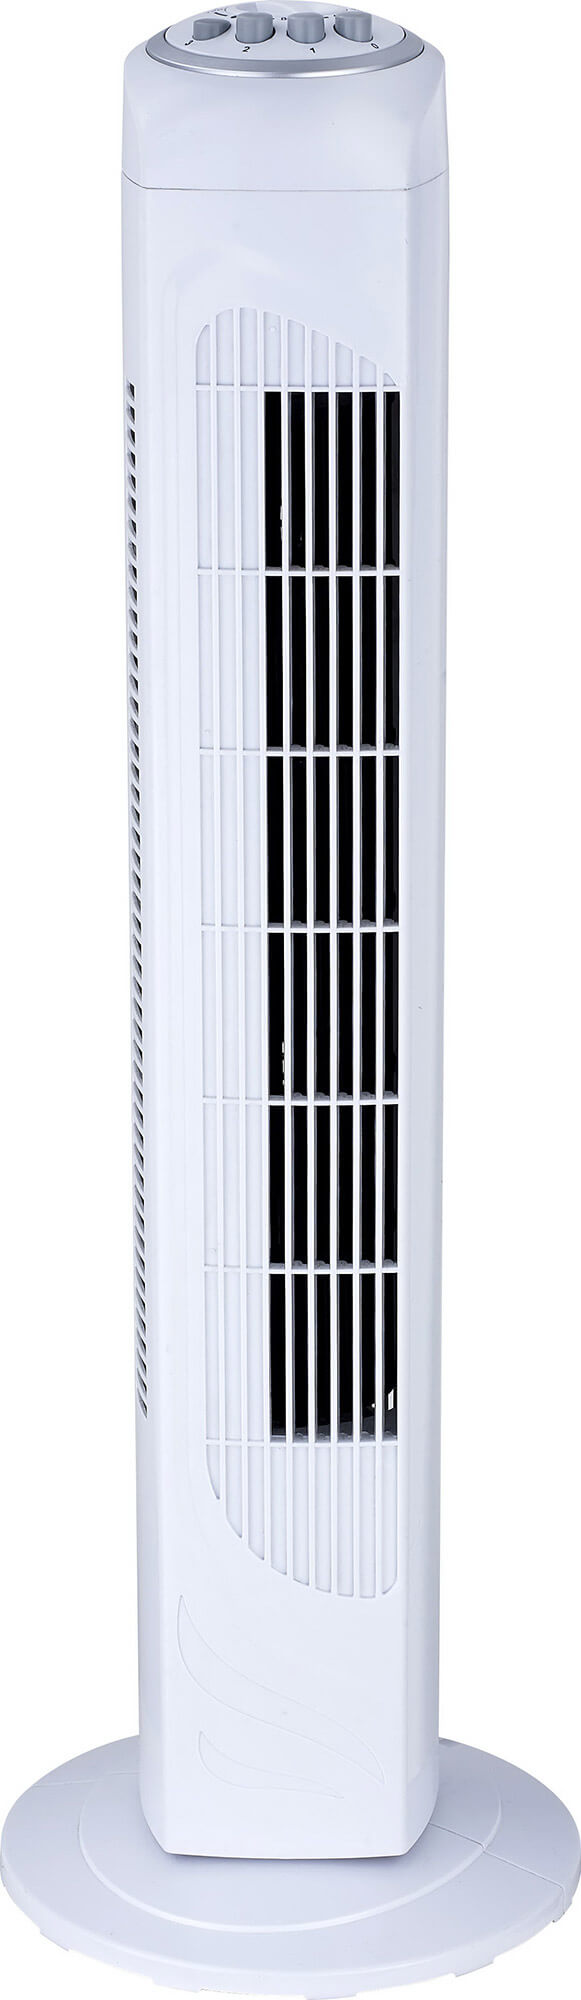 Ventilatore a Colonna Oscillante in ABS 50W 3 Velocità Bauer Bianco acquista